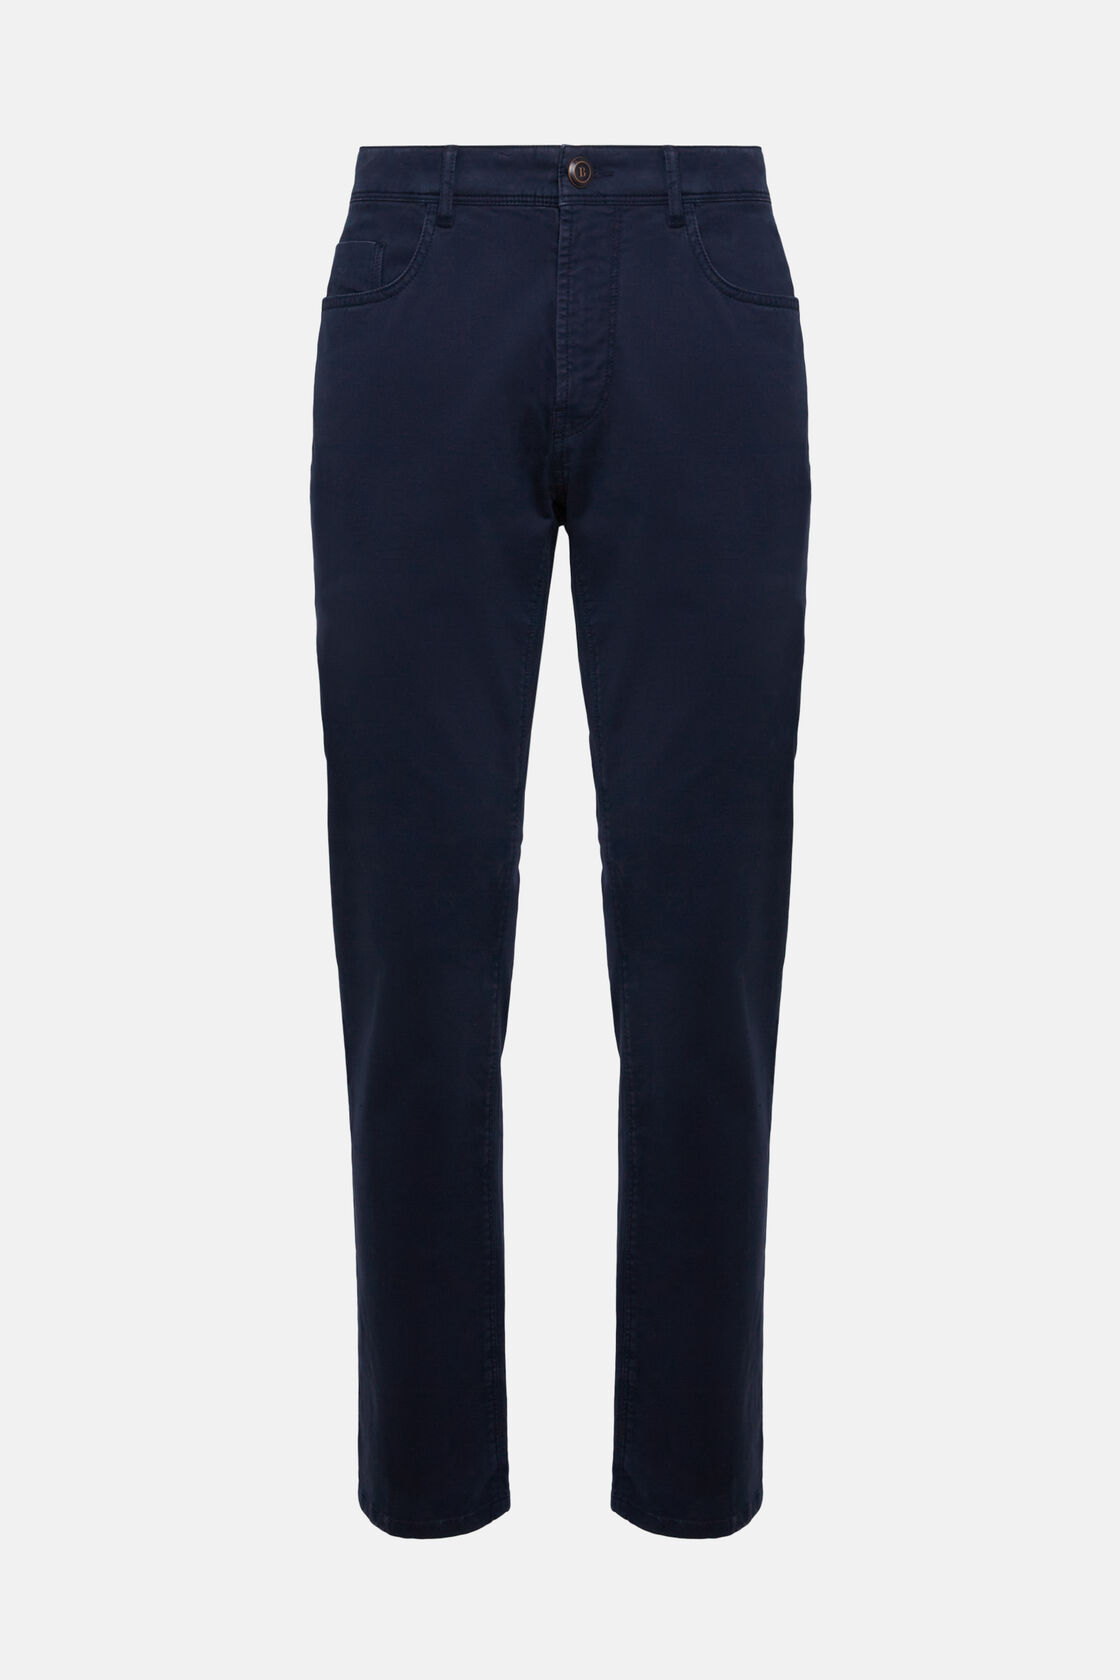 Jeans Aus Elastischer Baumwolle, Navy blau, hi-res